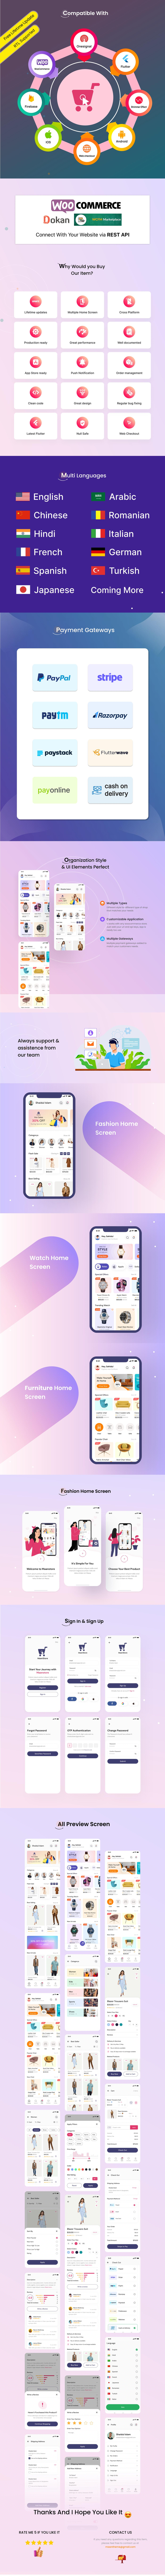 MaanStore WooCommerce - Flutter eCommerce Full App - 8